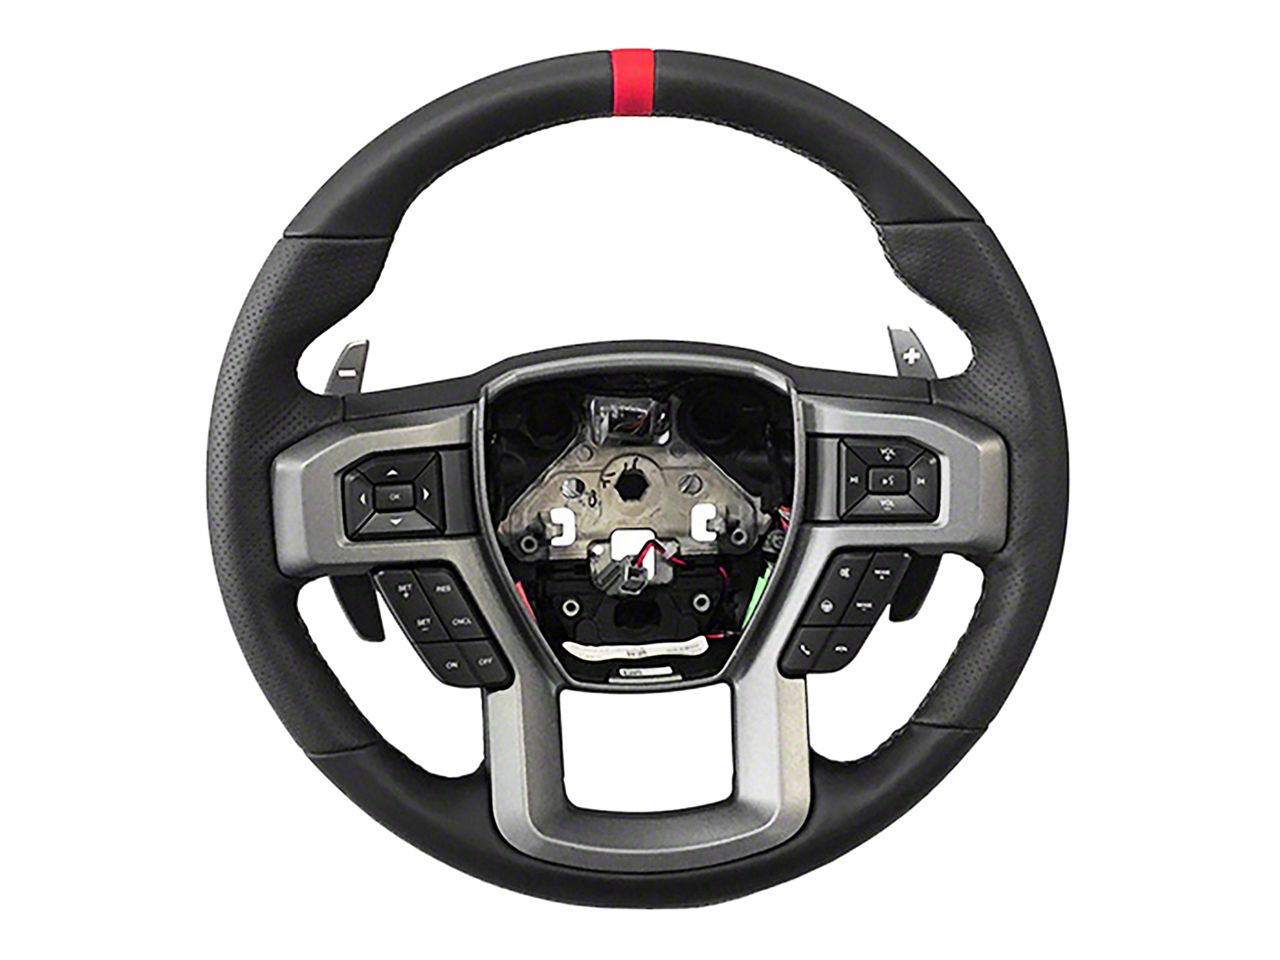 Silverado3500 Steering Wheels & Accessories 2007-2014